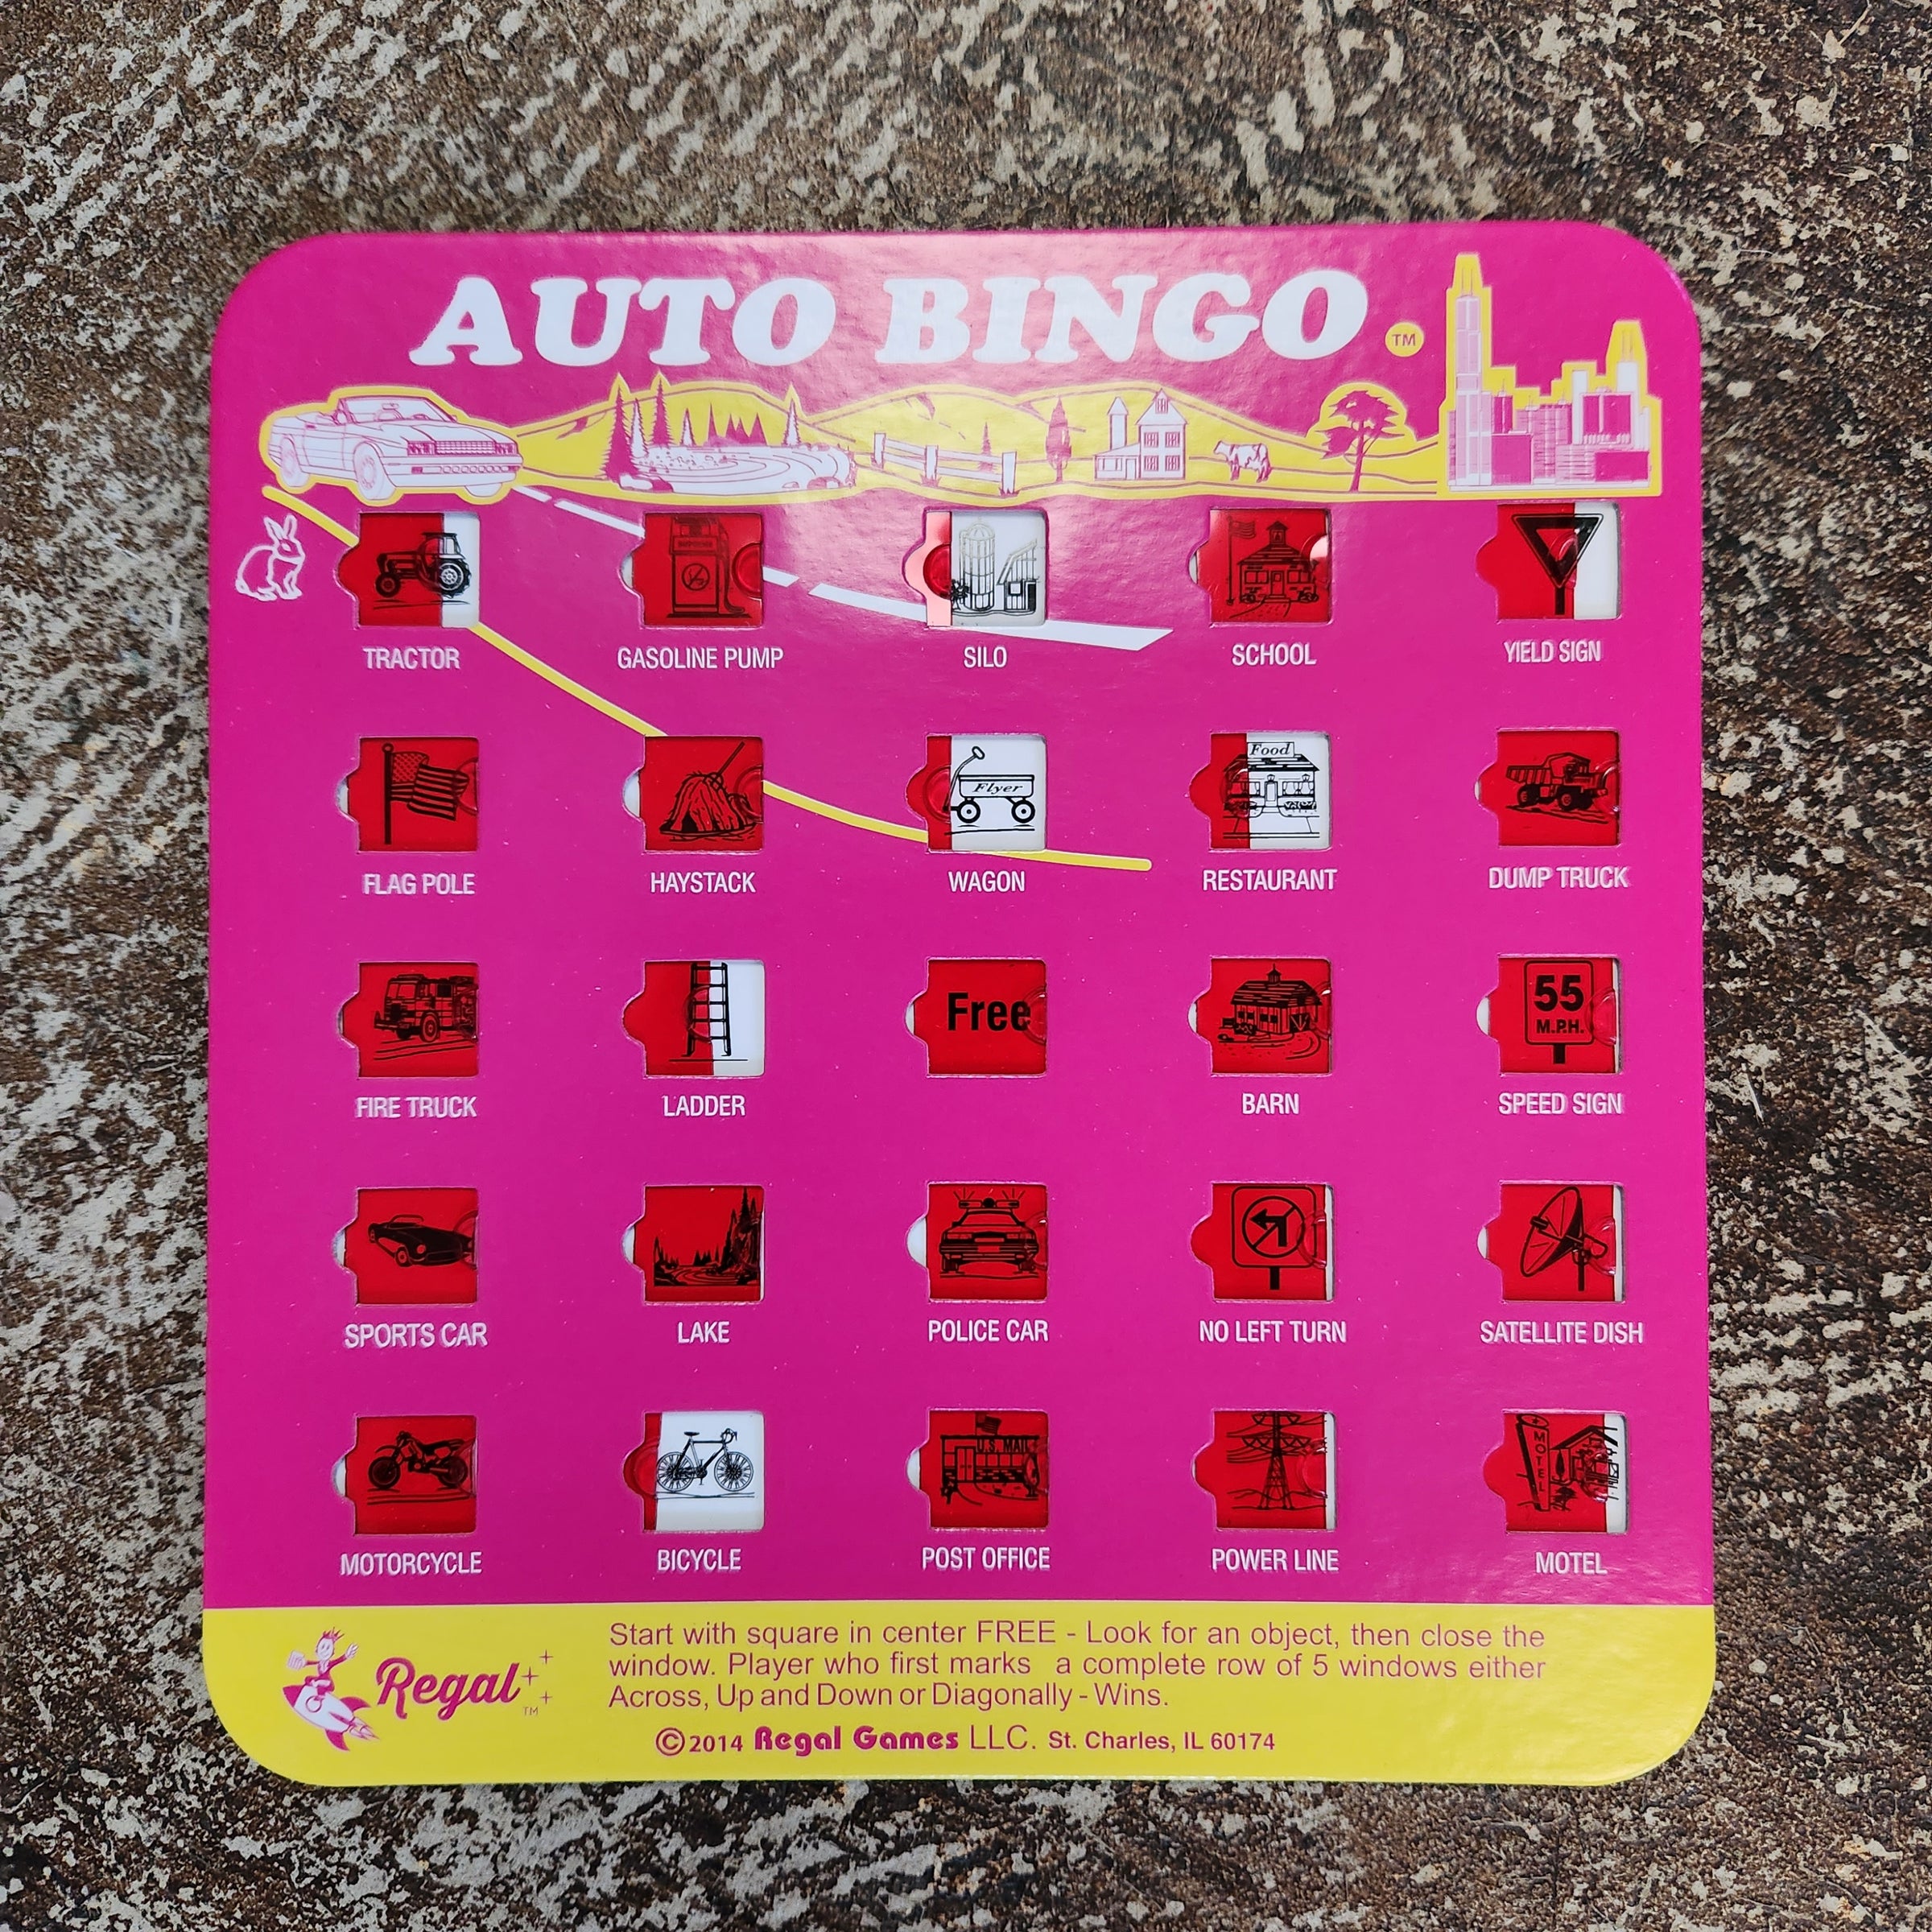 Travel Bingo